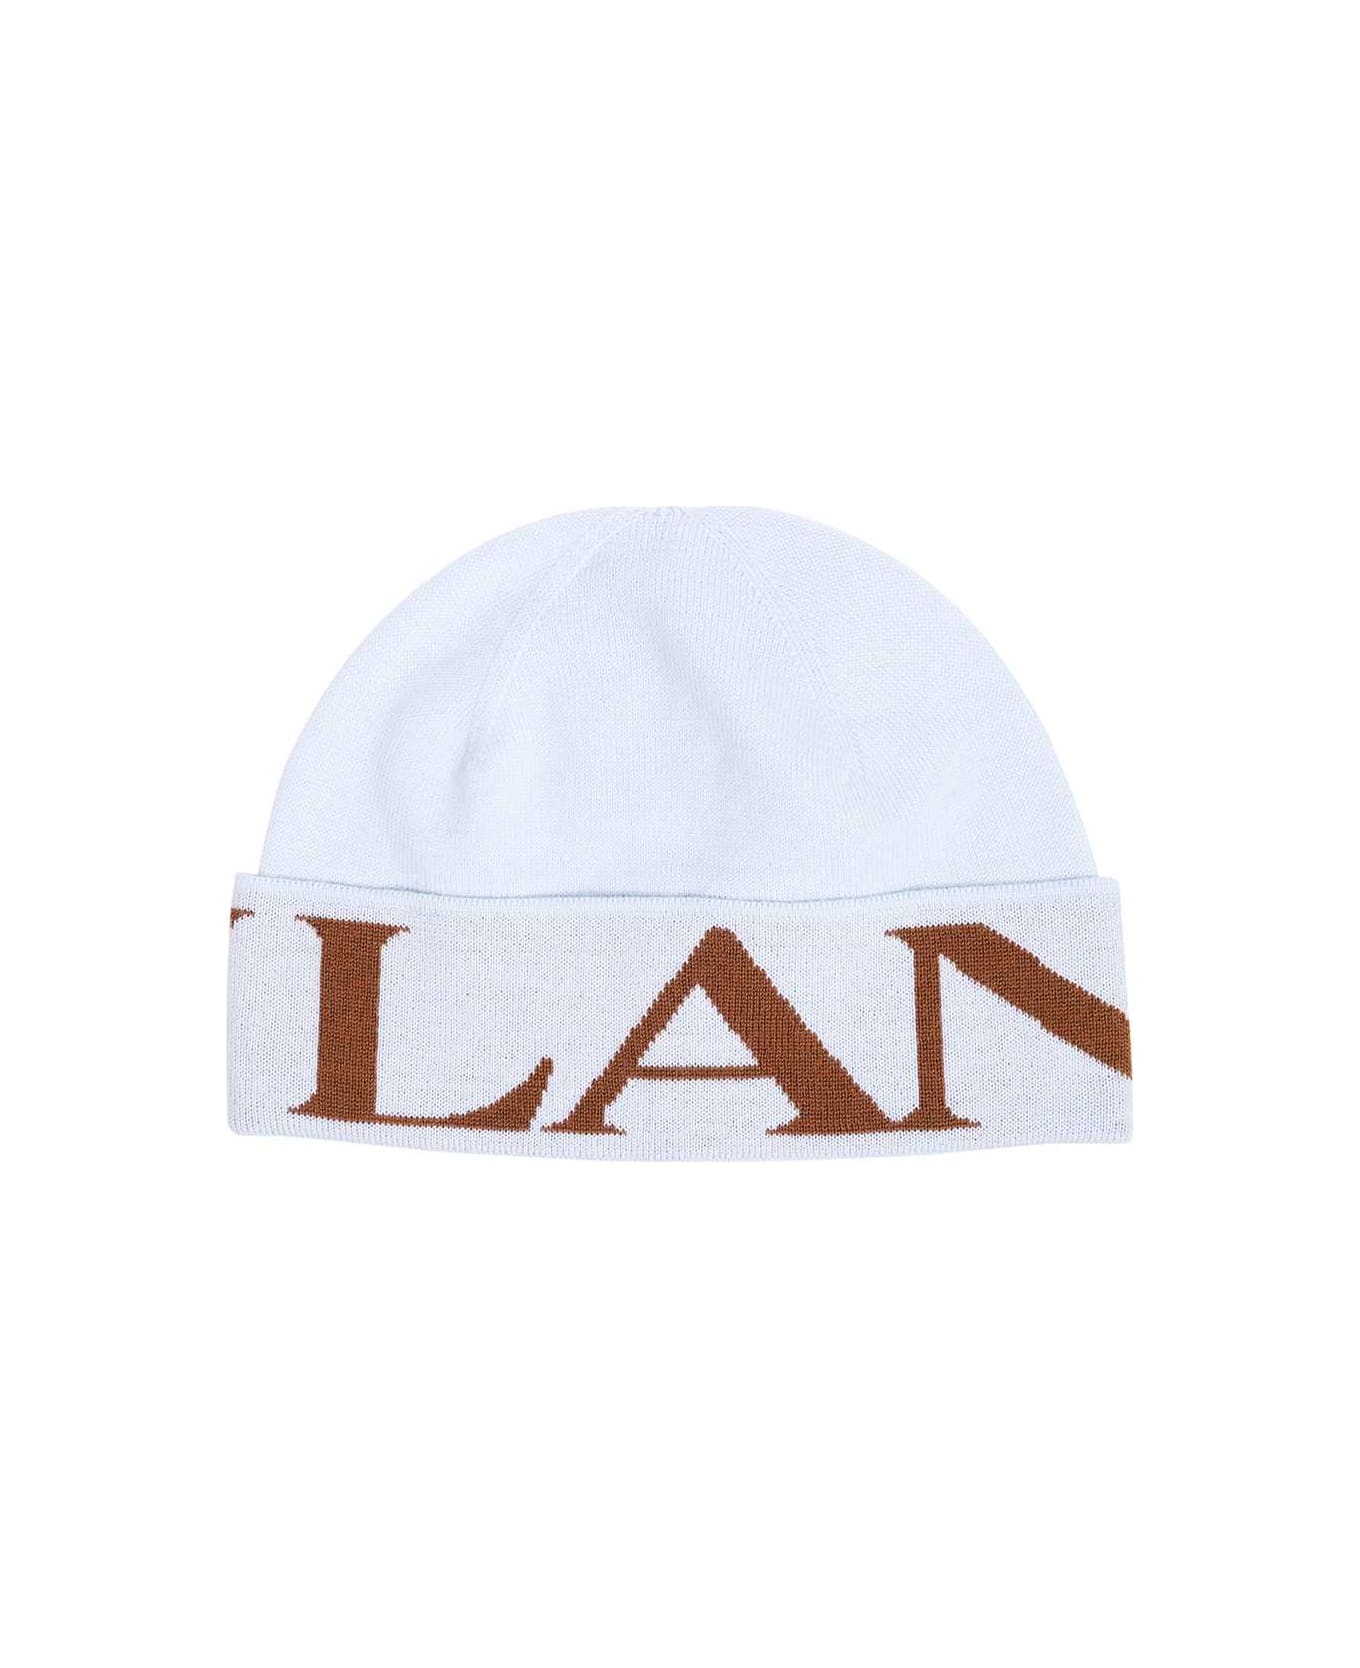 Lanvin Wool Hat - Light Blue